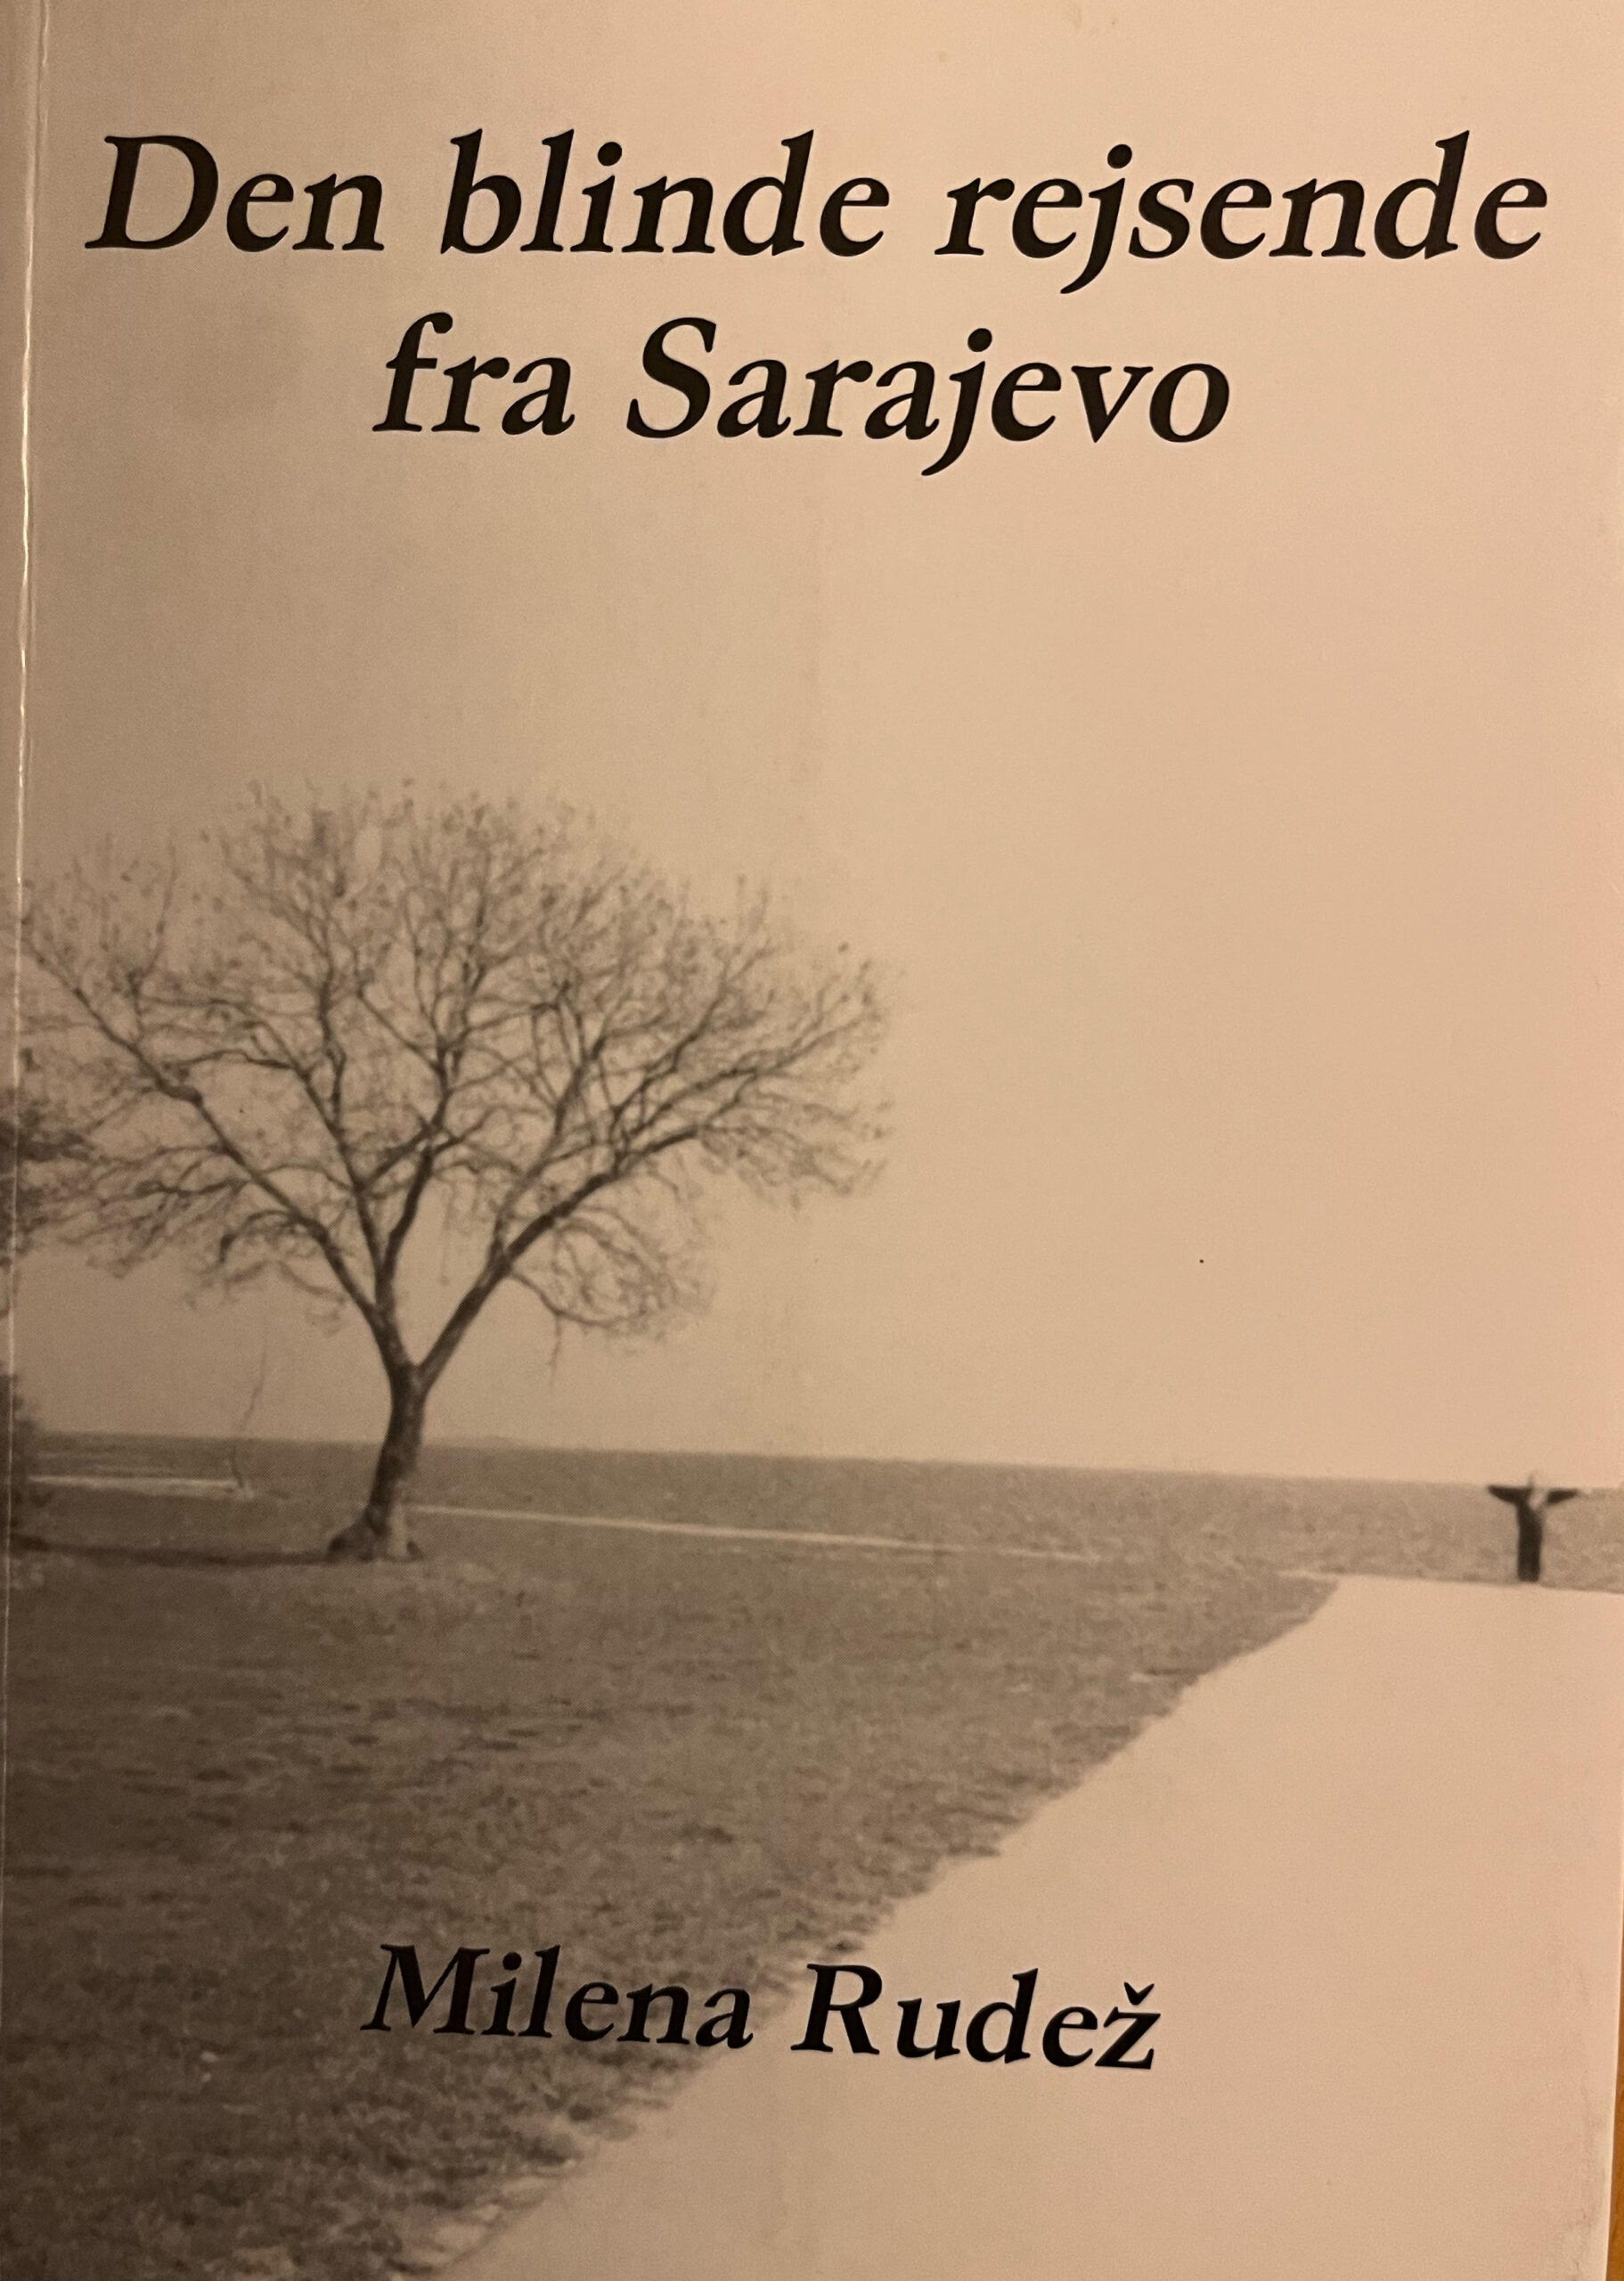 Den blinde rejsende fra Sarajevo / Slijepi putnik iz Sarajeva